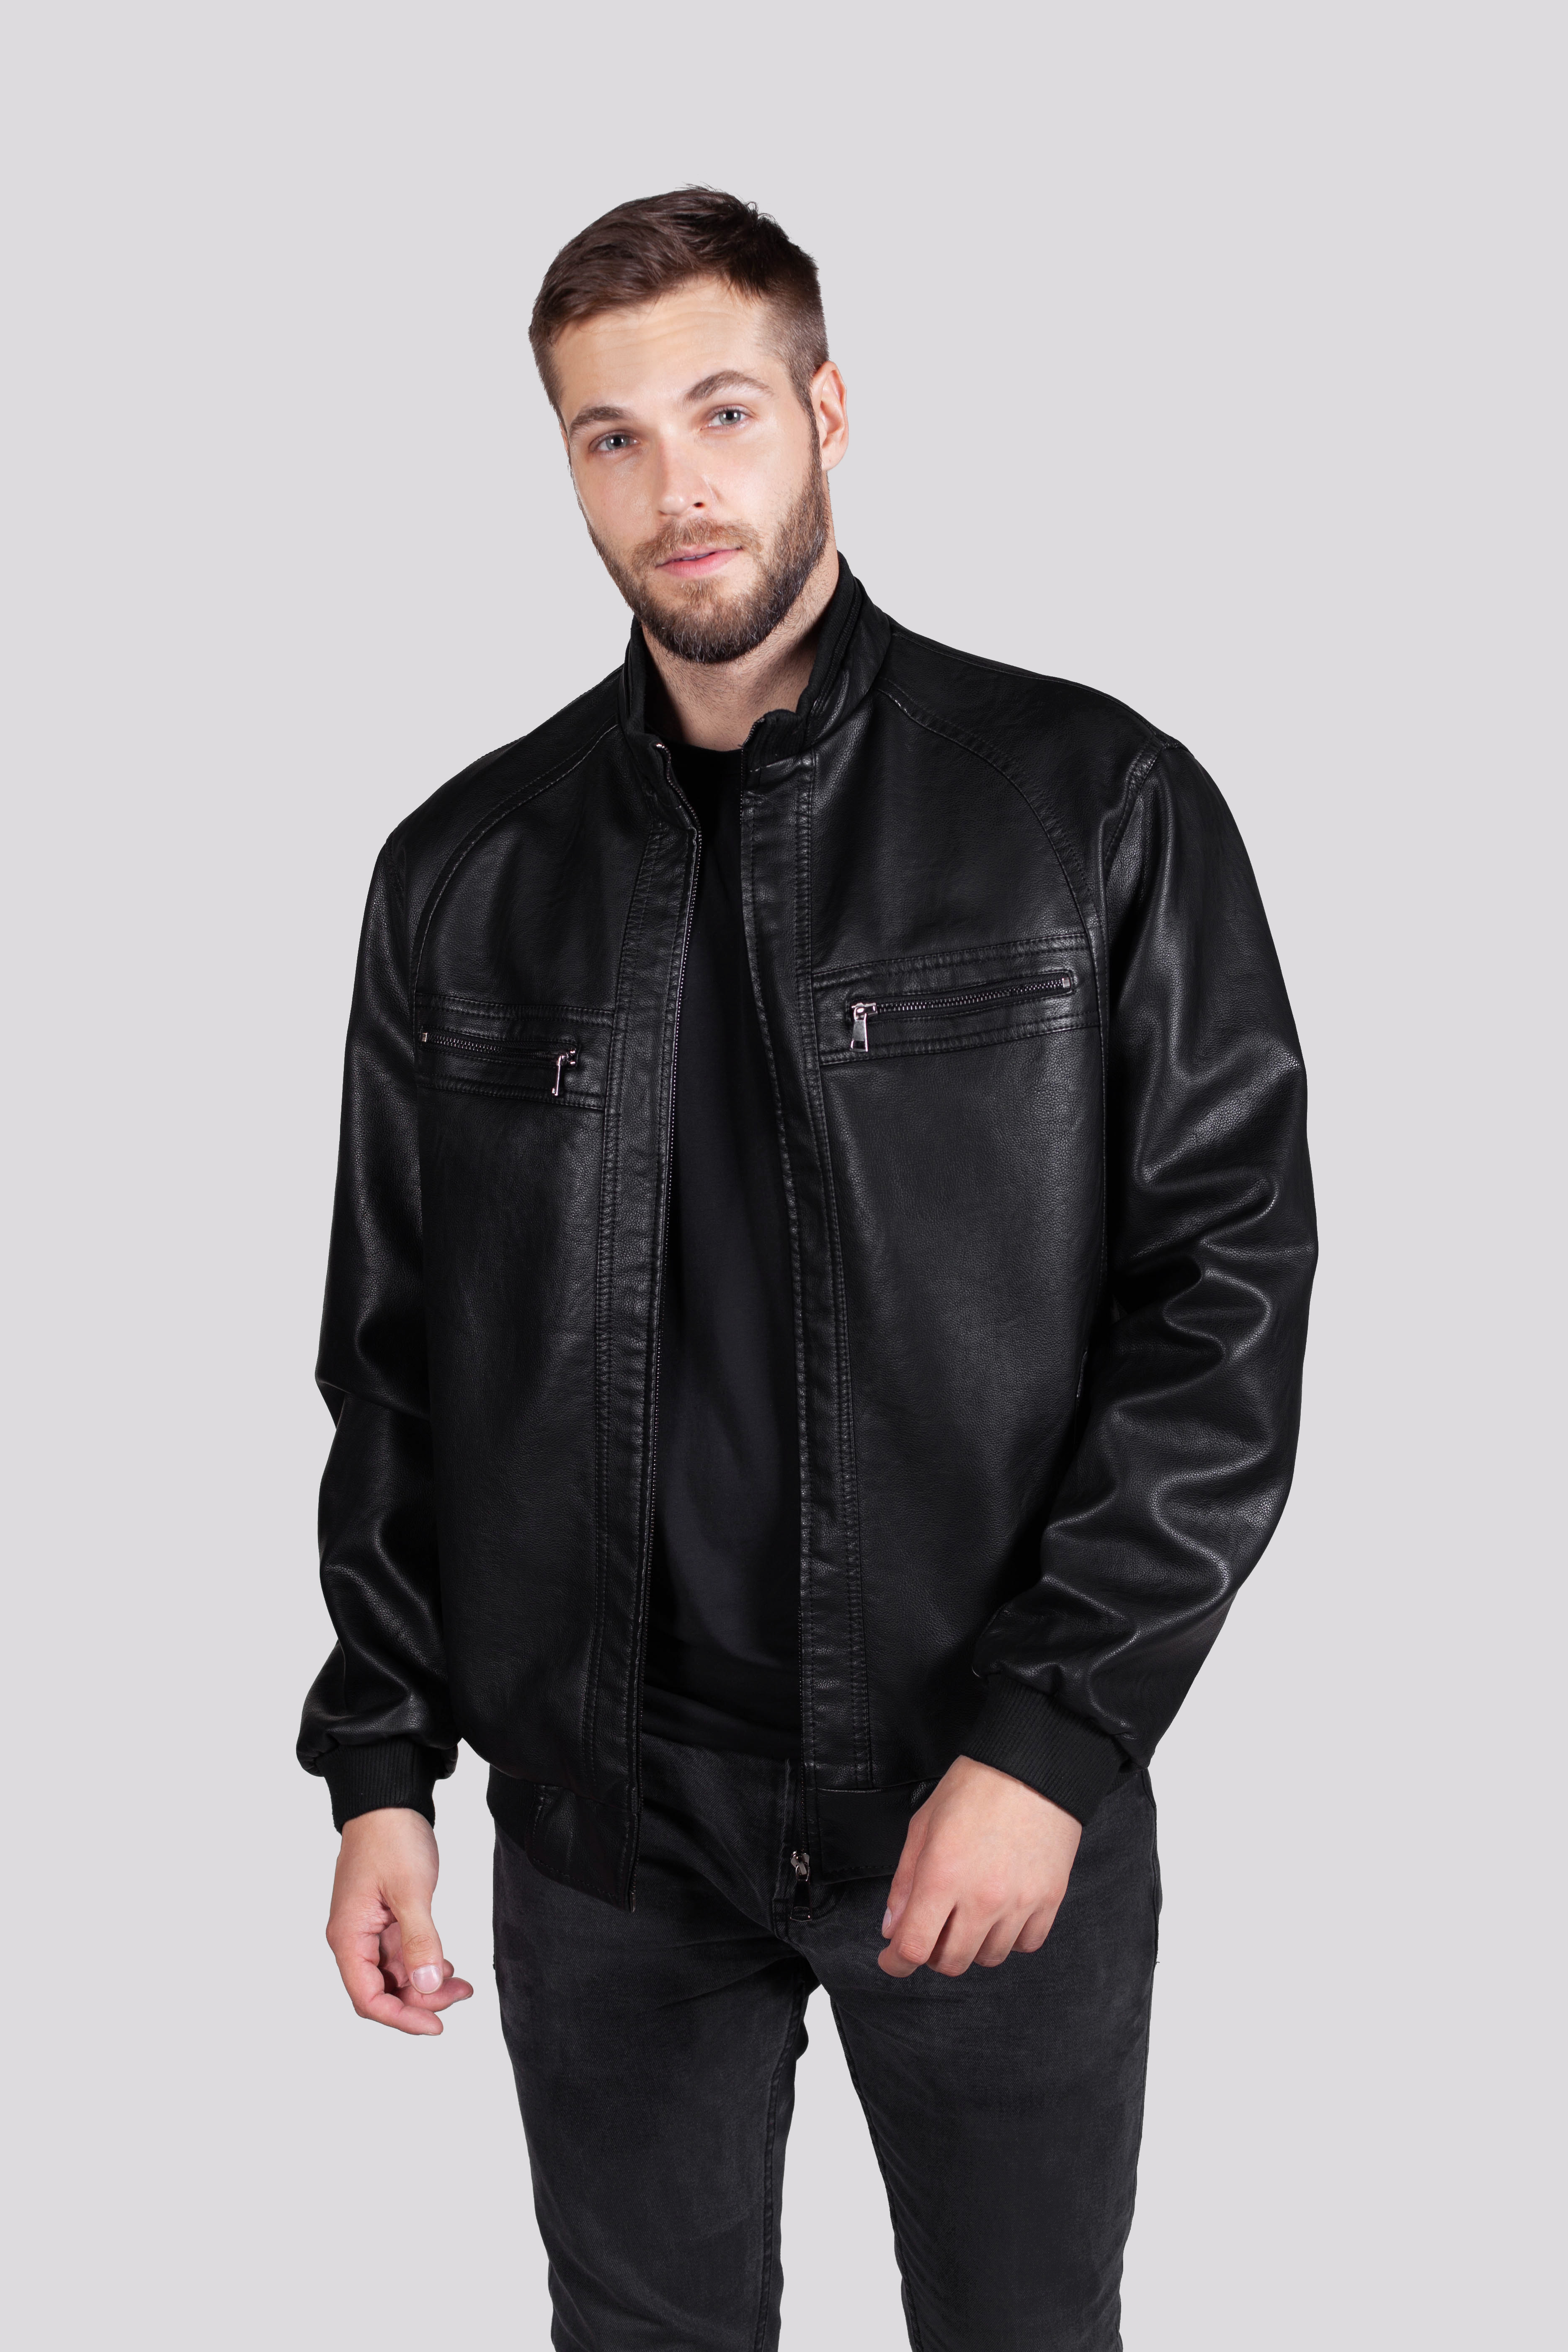 Кожаная куртка мужская RATSKA 809 черная 62 RU